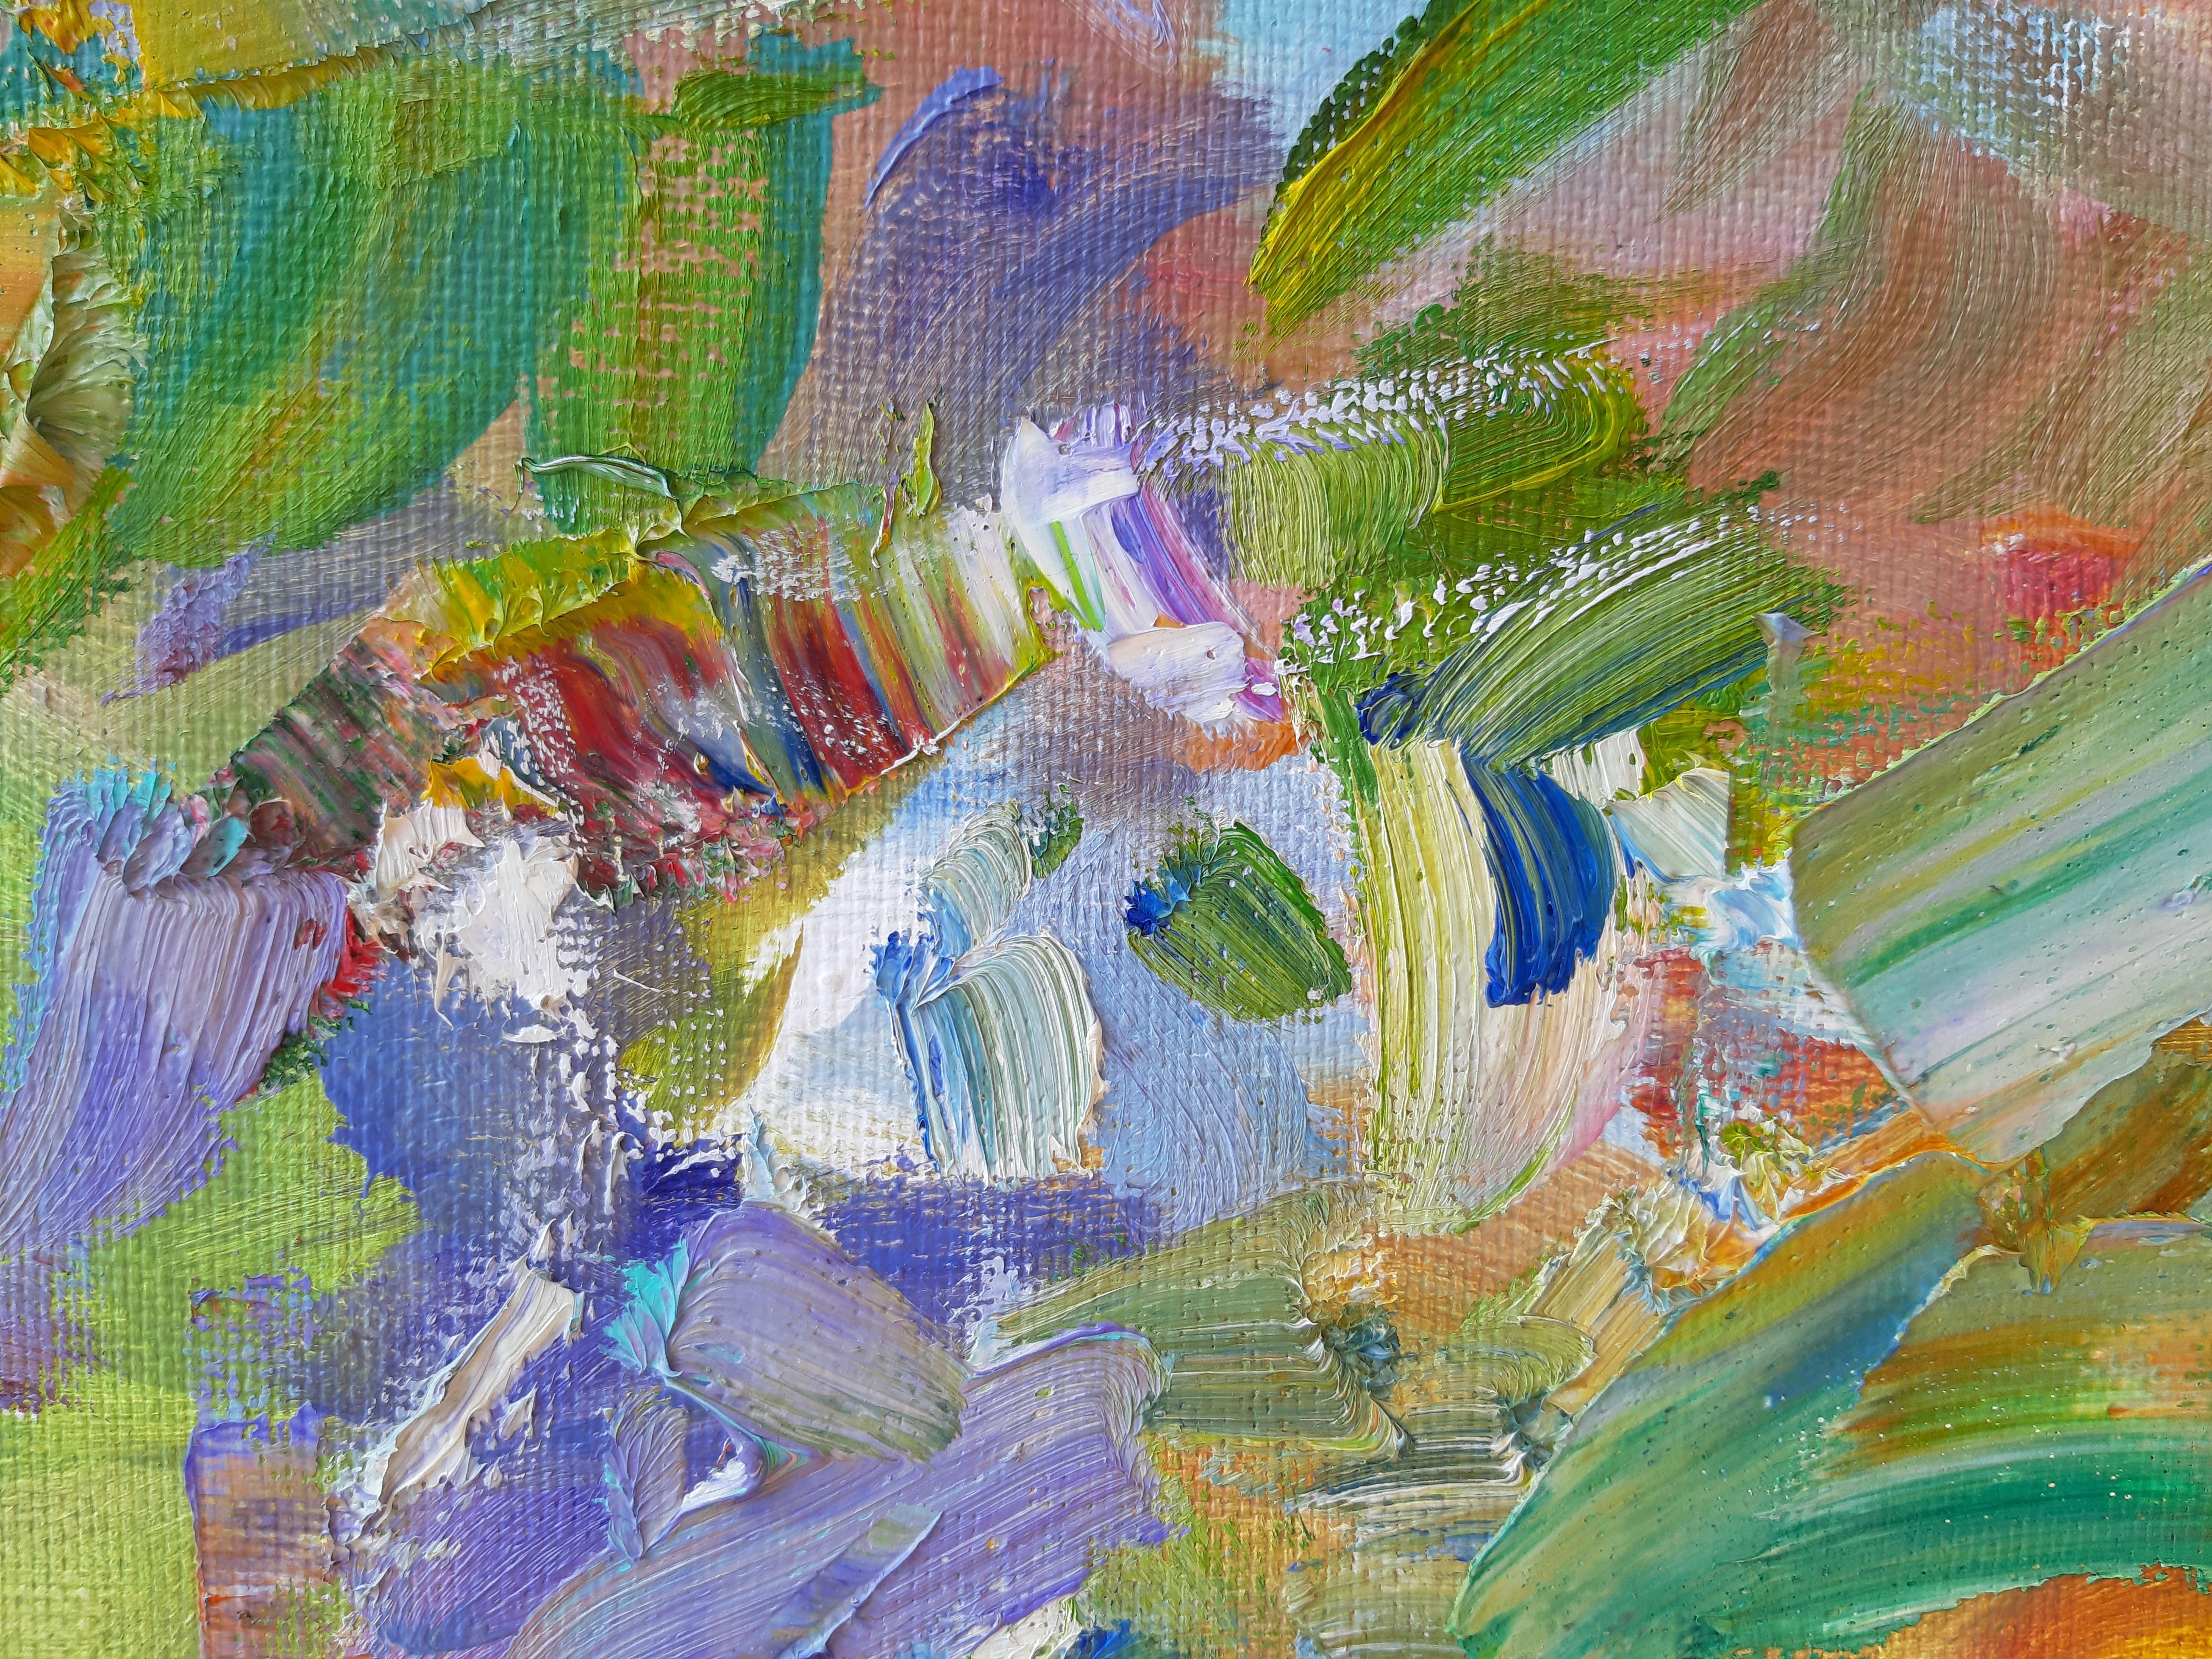 Edelweiss  Landschaft, lgemlde in den Farben Blau, Grn, Wei, Grau und Elfenbein (Impressionismus), Painting, von Alina Khrapchynska